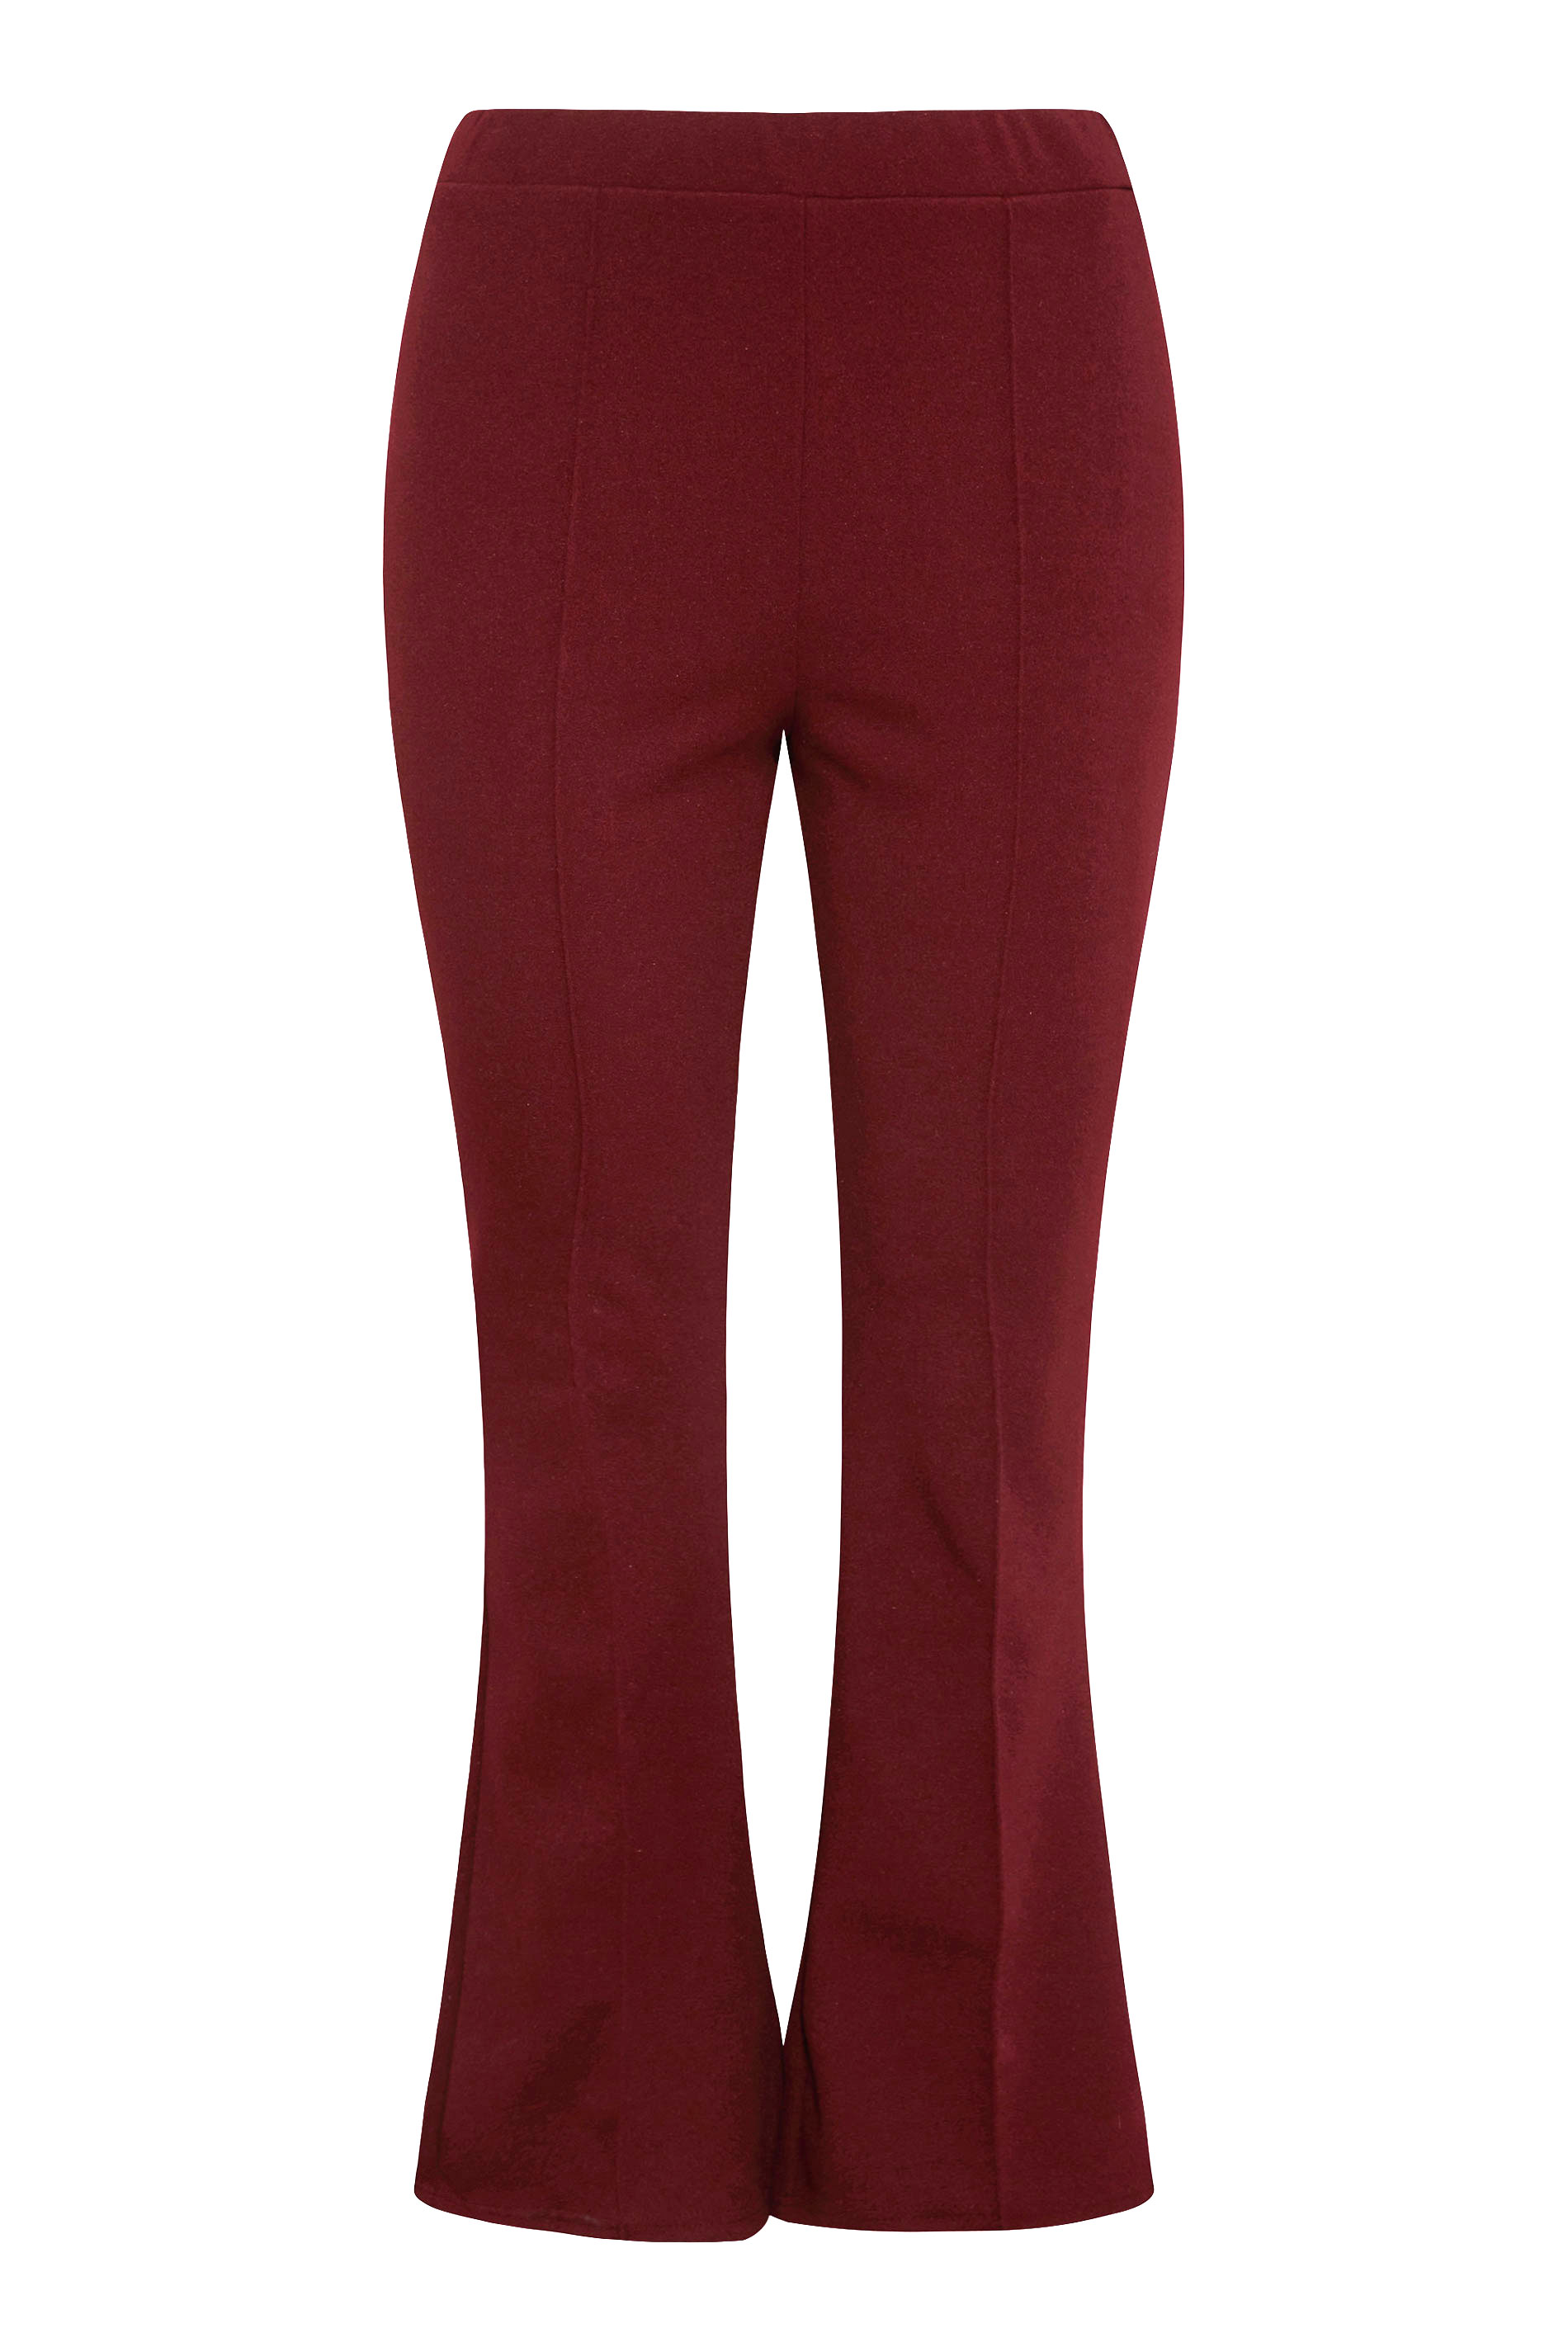 Grande taille  Pantalons Grande taille  Pantalons Larges, Wide Leg | Pantalon Rouge Vin Couture Style Ample - WL83440